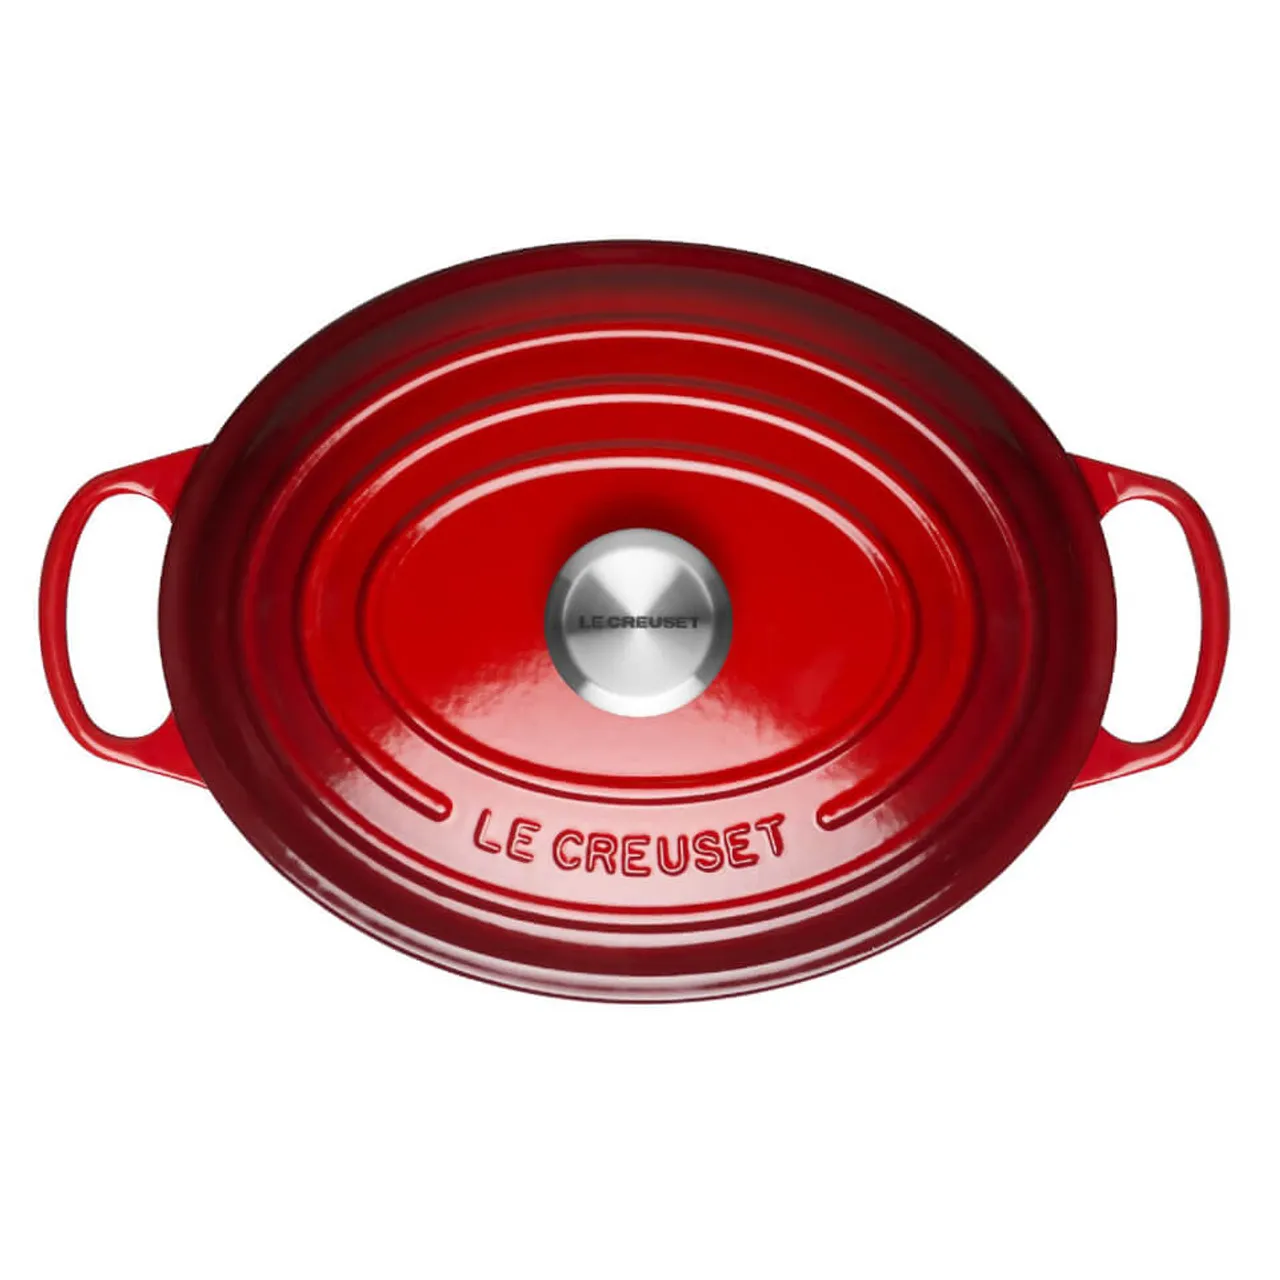 Le Creuset Signature Cast Iron Oval Casserole Dish - 27cm - Cerise